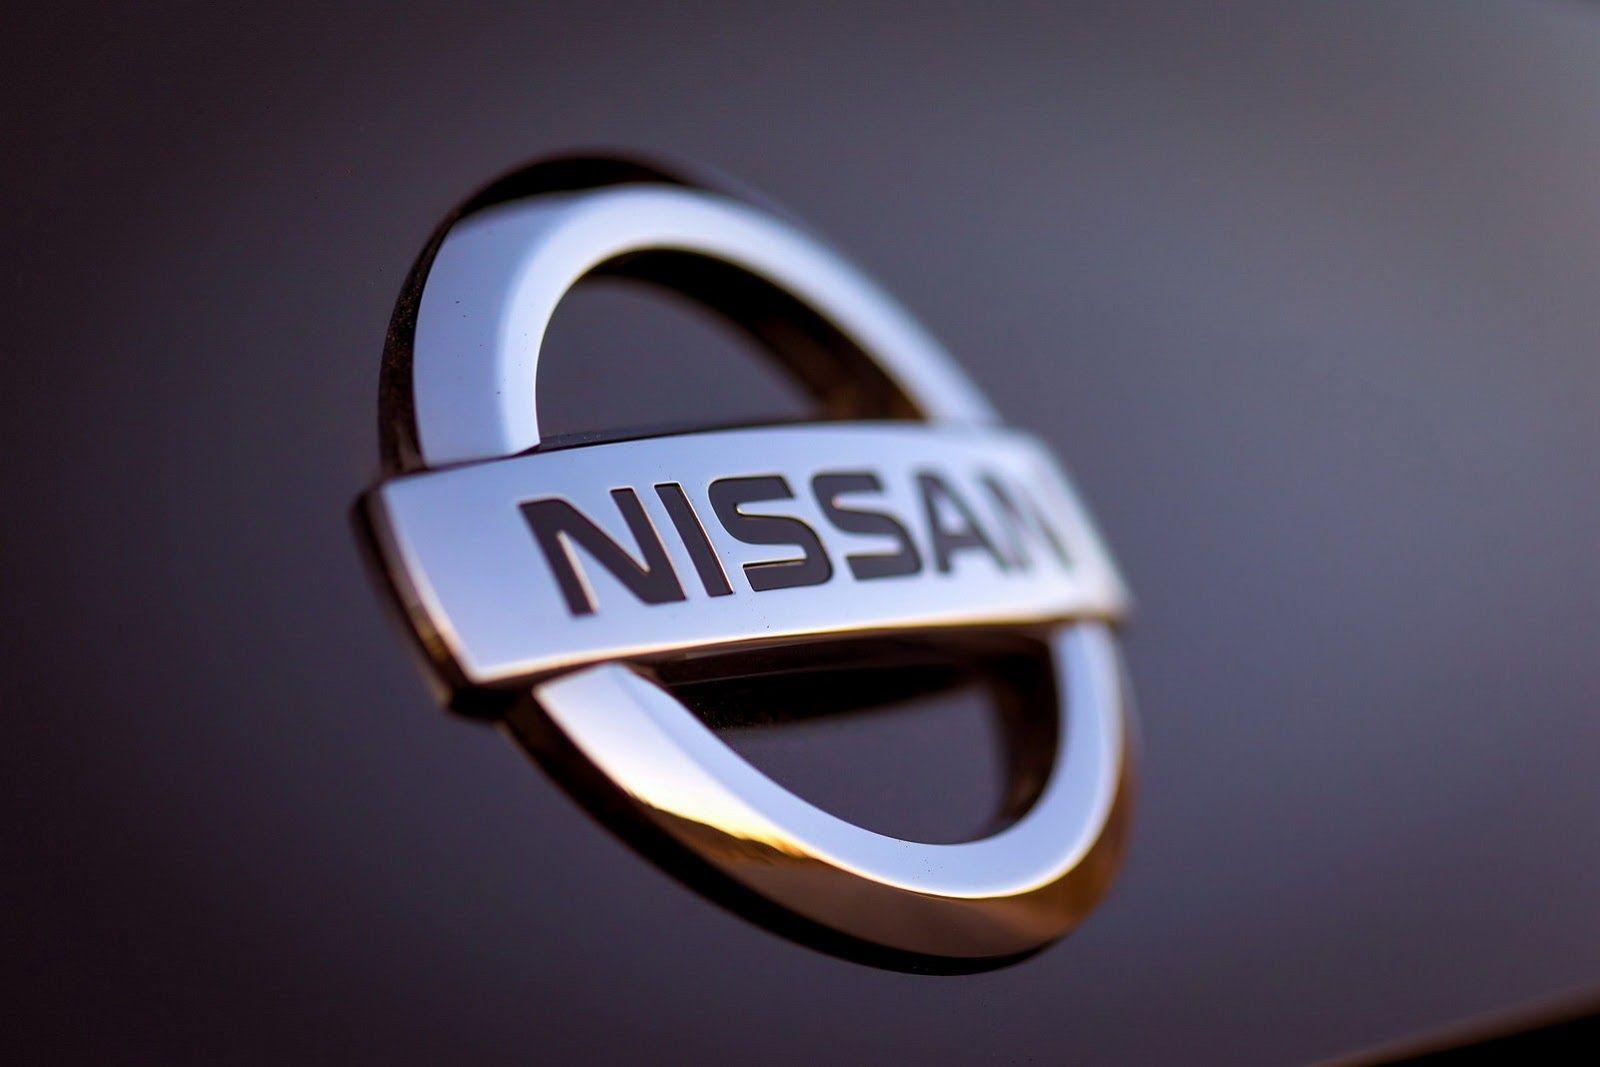 Nissan Car Logo Wallpaper 59070 1600x1067 px